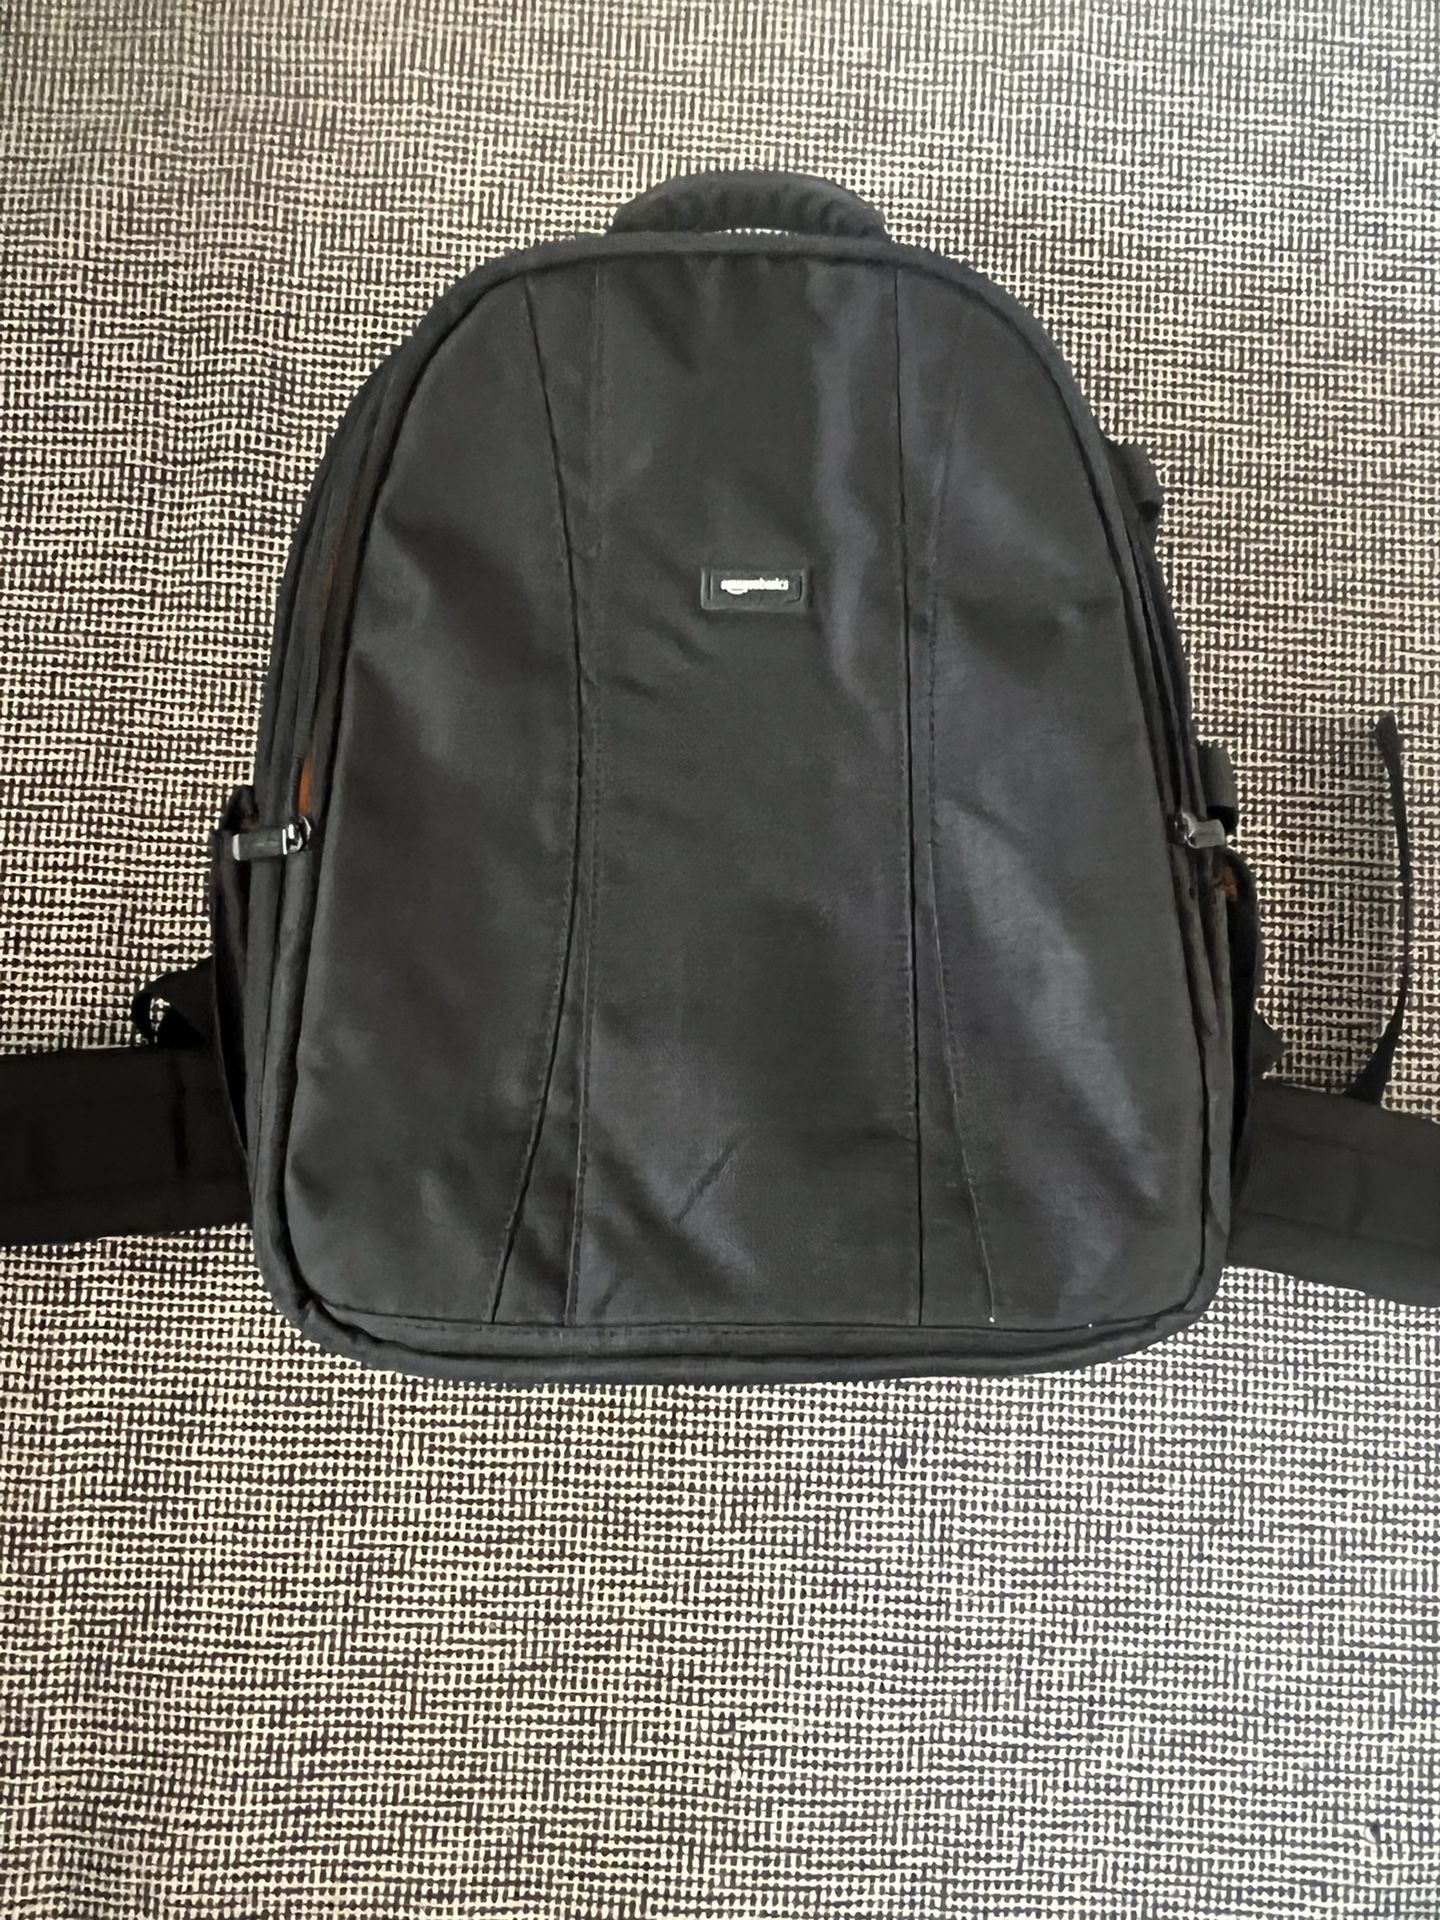 Amazon laptop Backpack